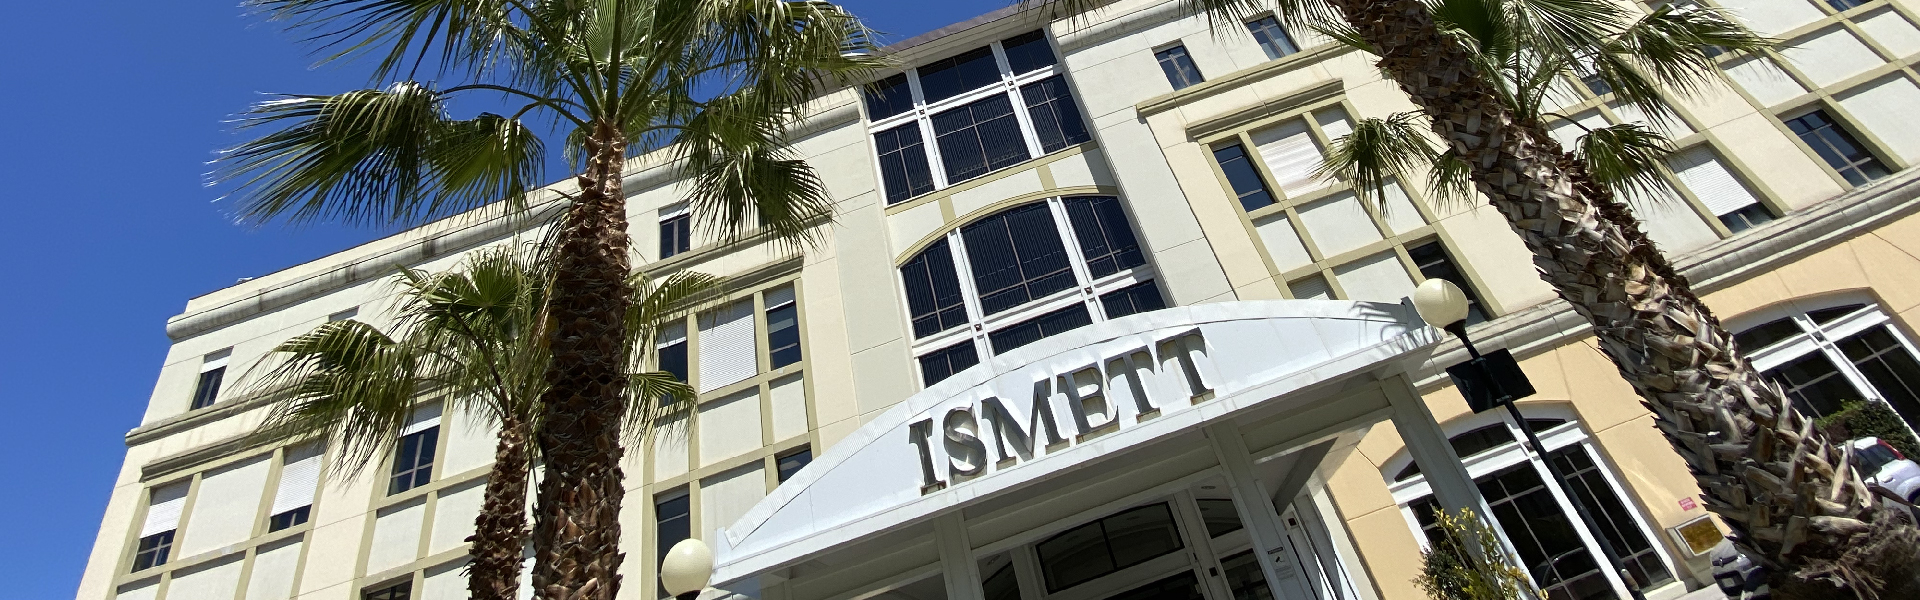 Nuovi laboratori Ismett: in Sicilia cresce la ricerca